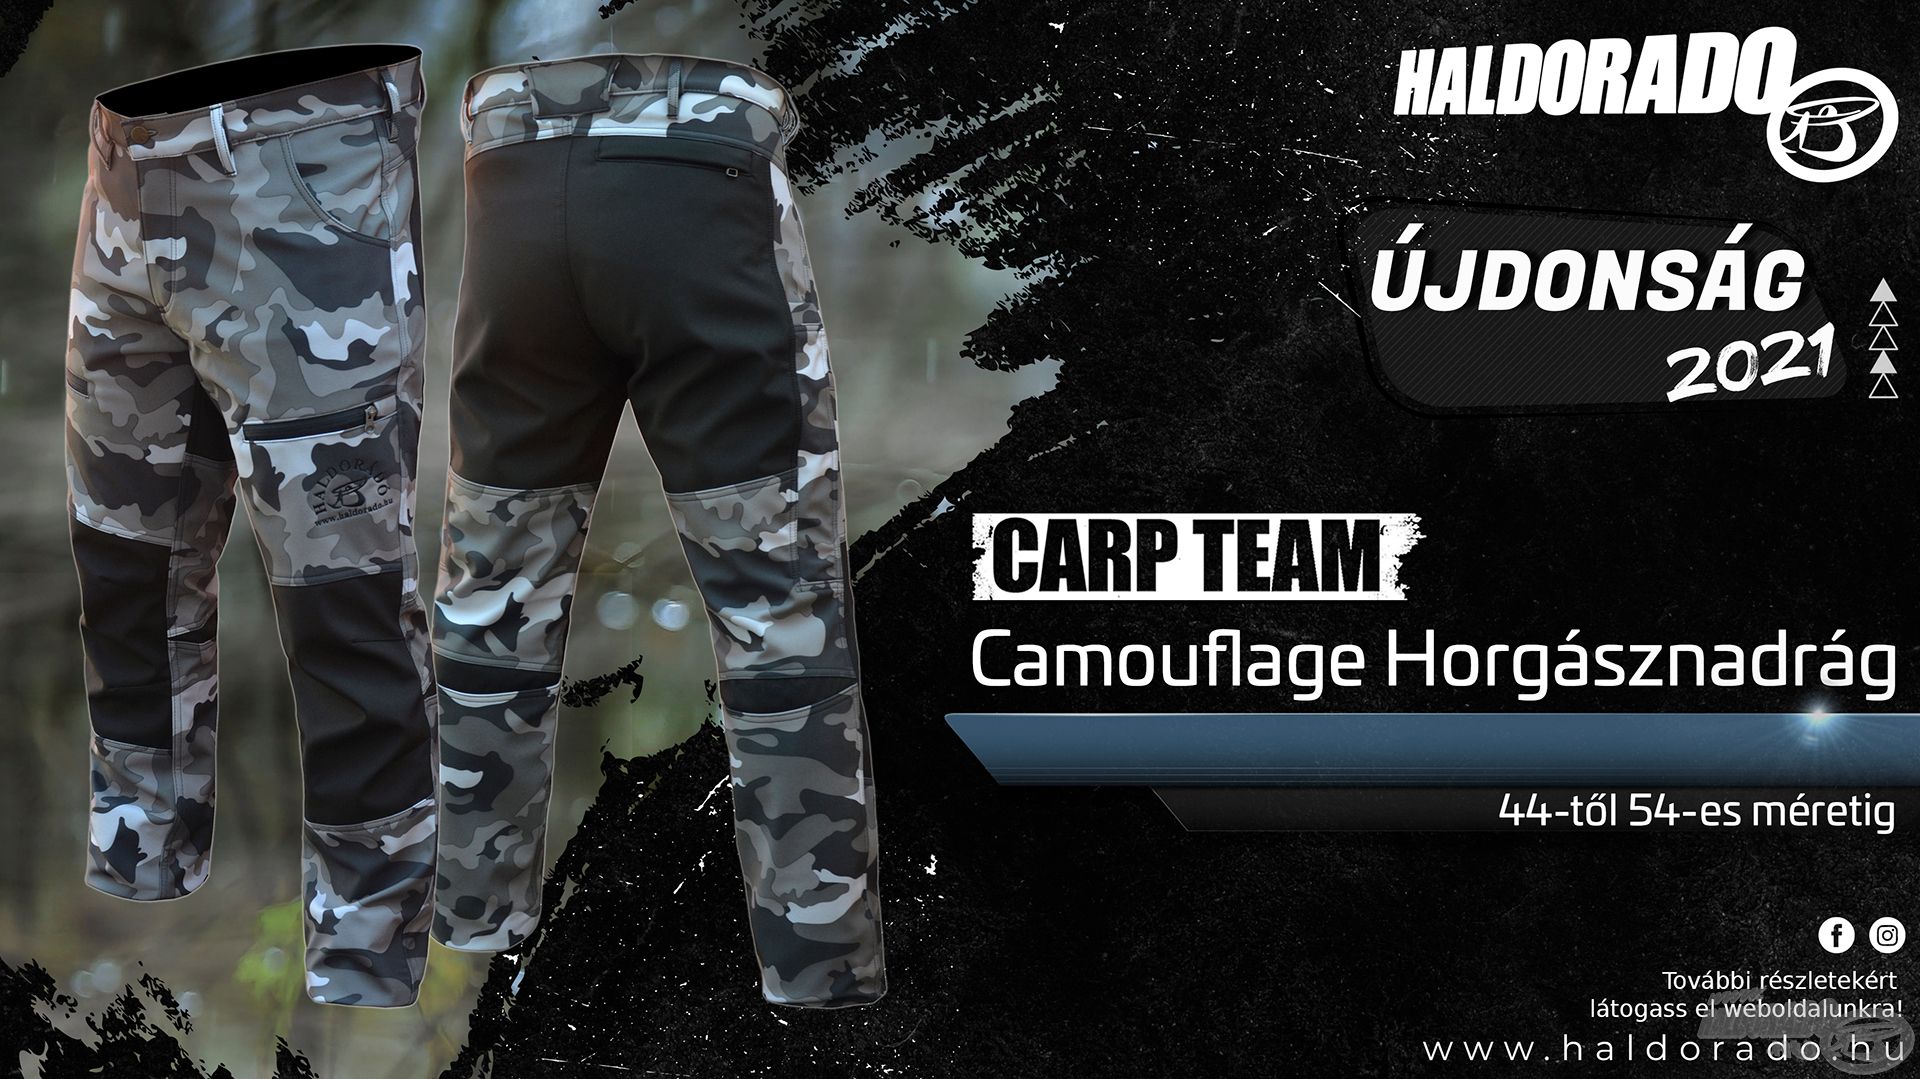 Szintén az idei év egyik újdonsága a Carp Team Camouflage Horgásznadrág, mely a manapság igen népszerű és divatos „urban camouflage” mintázattal készül